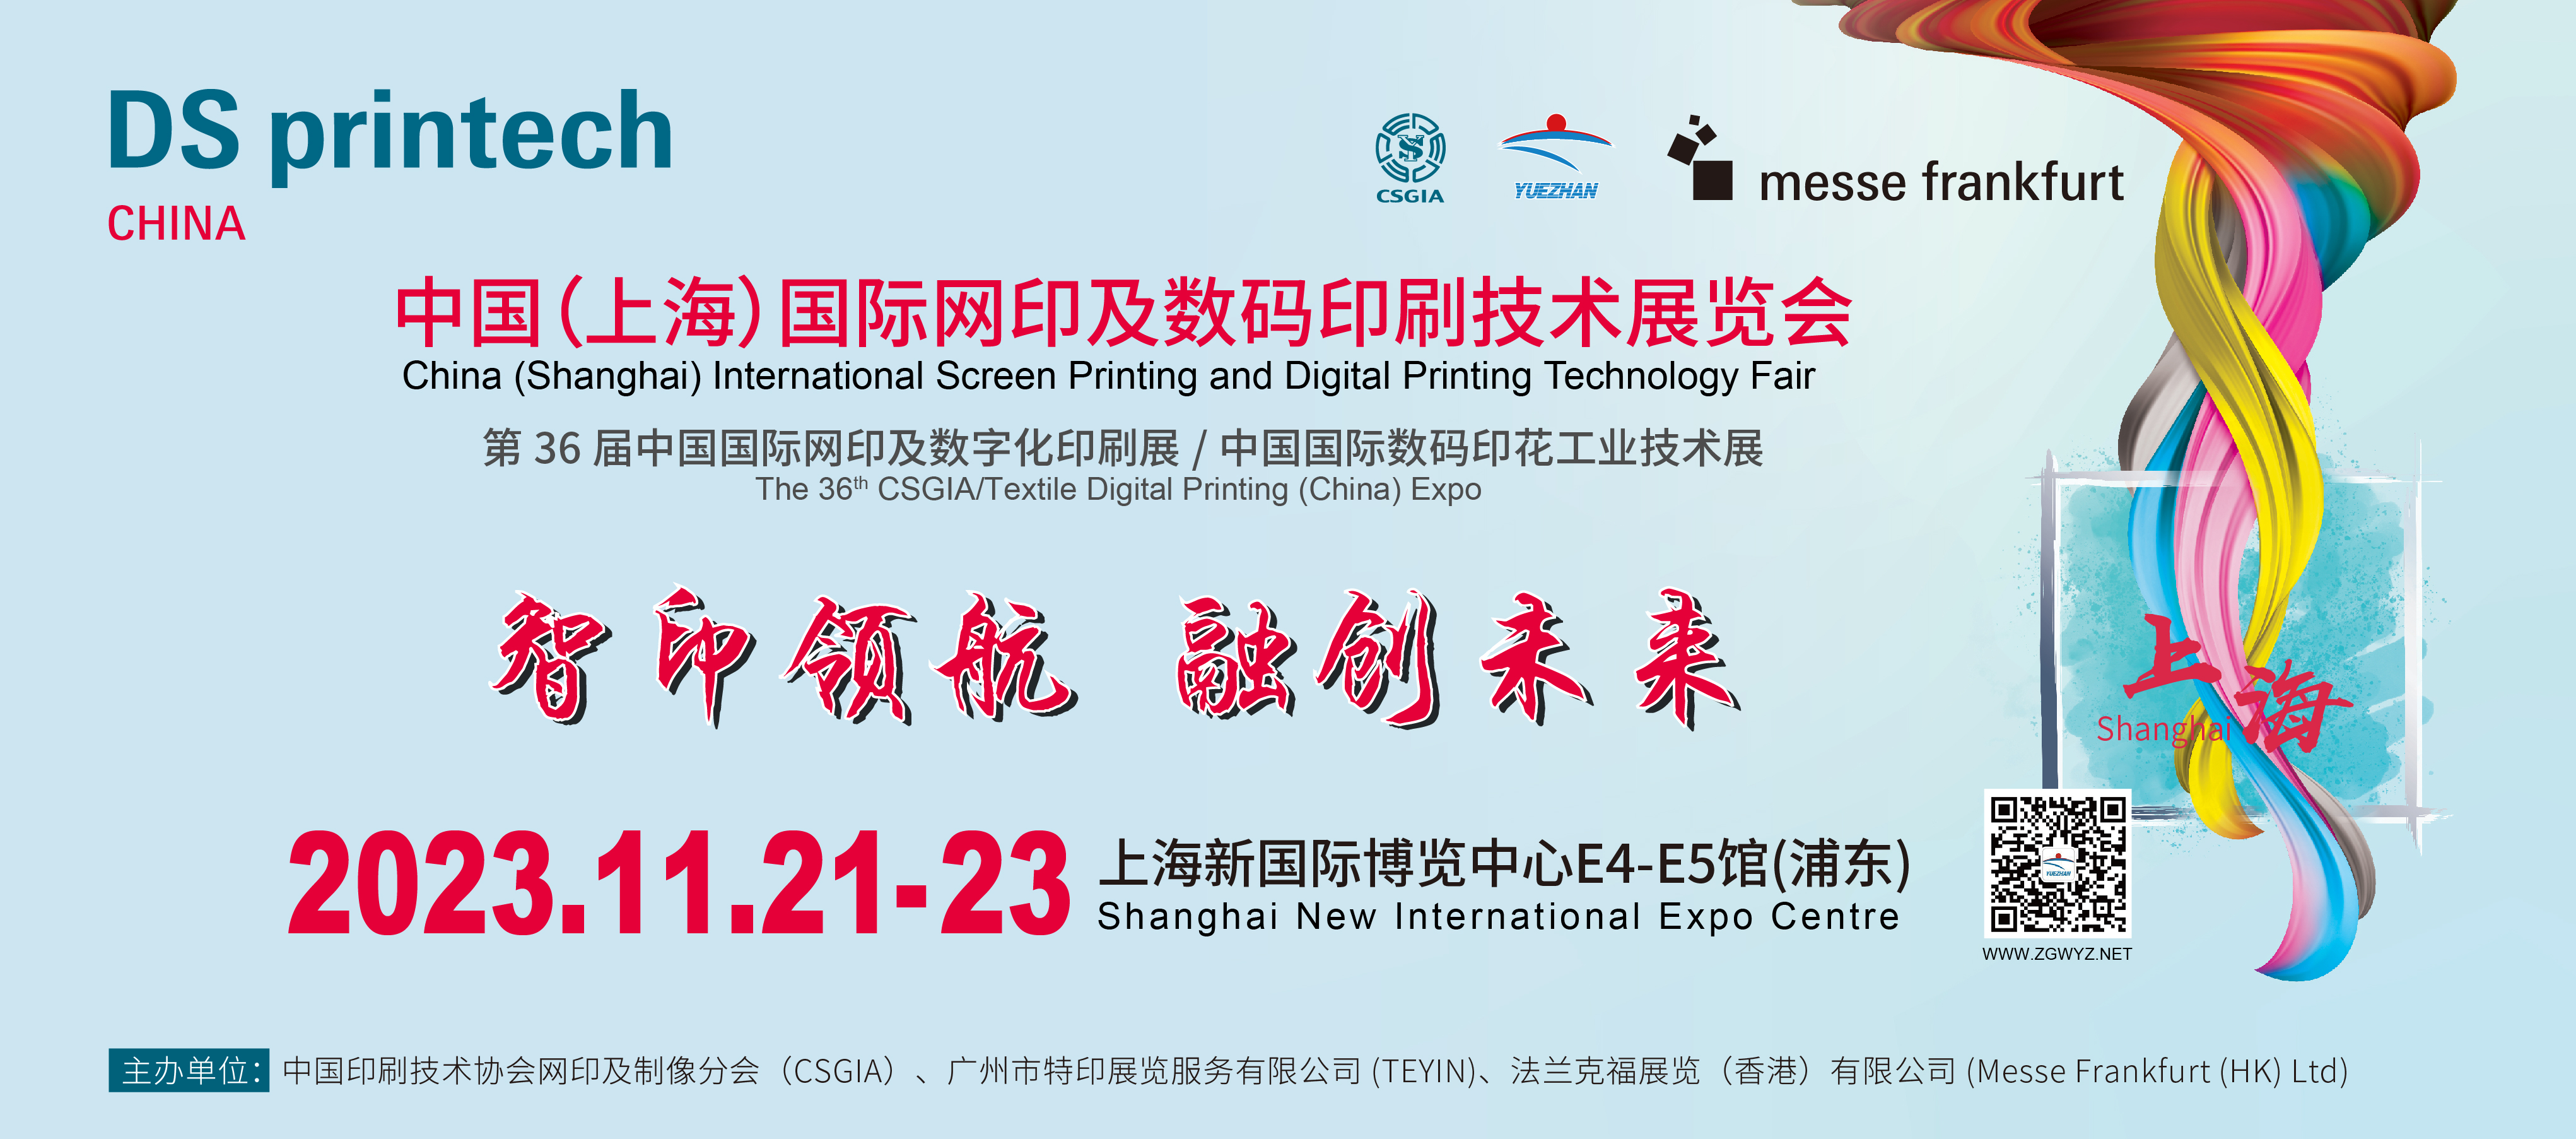 2023年中国(上海)国际网印及数码印刷技术展览会_亚太网印展 image